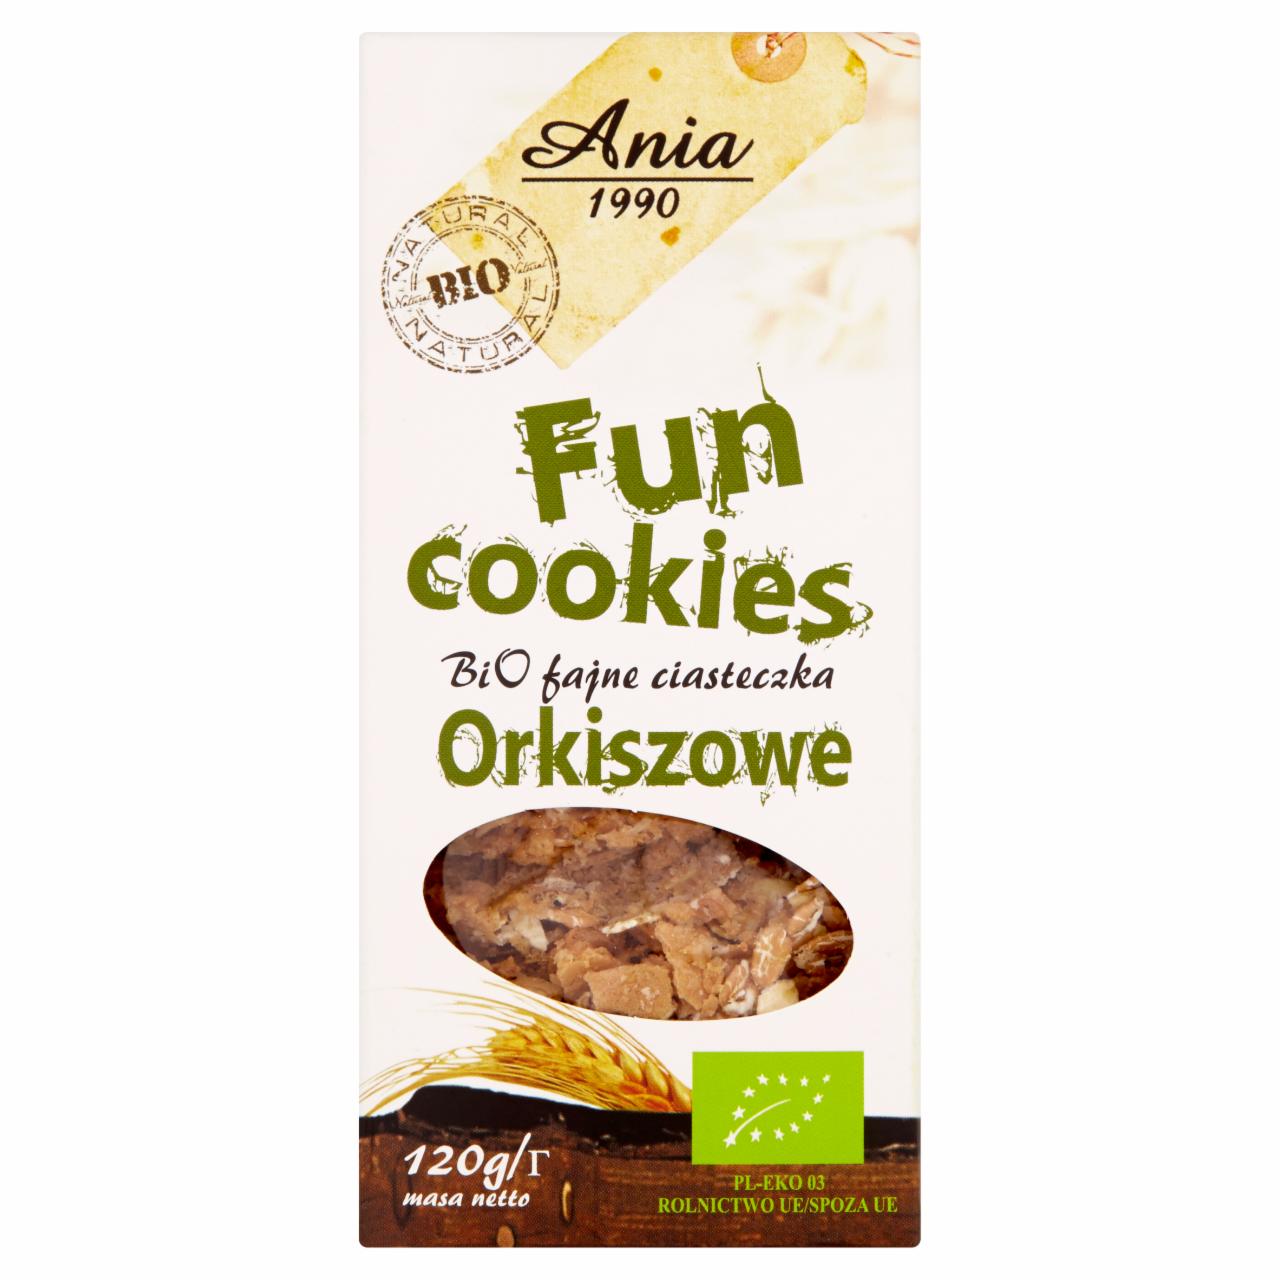 Zdjęcia - Ania Fun Cookies Bio fajne ciasteczka orkiszowe 120 g